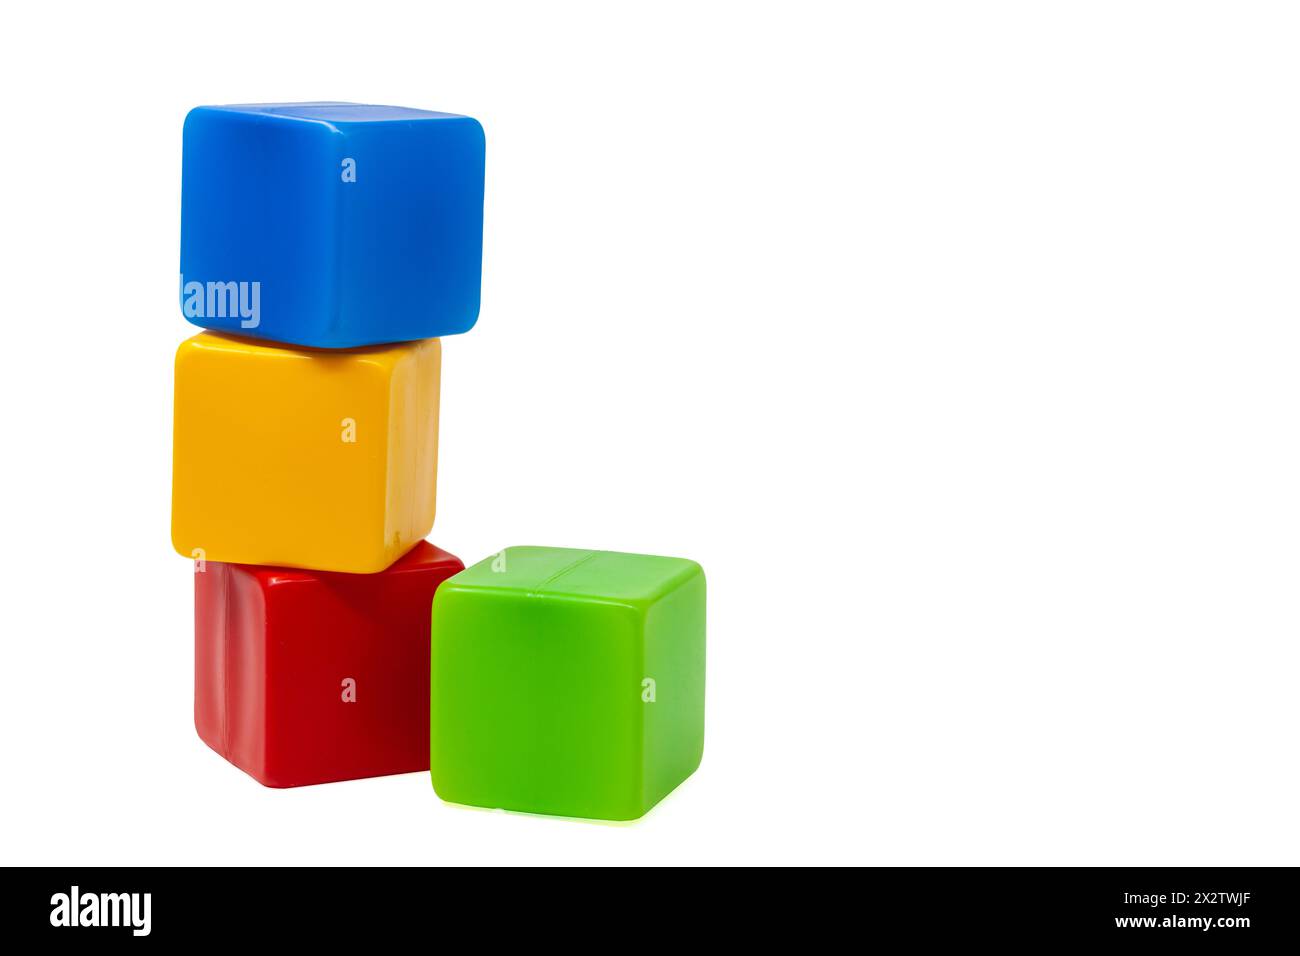 Mehrfarbige Plastikwürfel für Kinderspiele. Der gelbe Würfel steht oben auf dem roten und blauen Würfel, der grüne Würfel daneben. Eins auf eins. Stockfoto